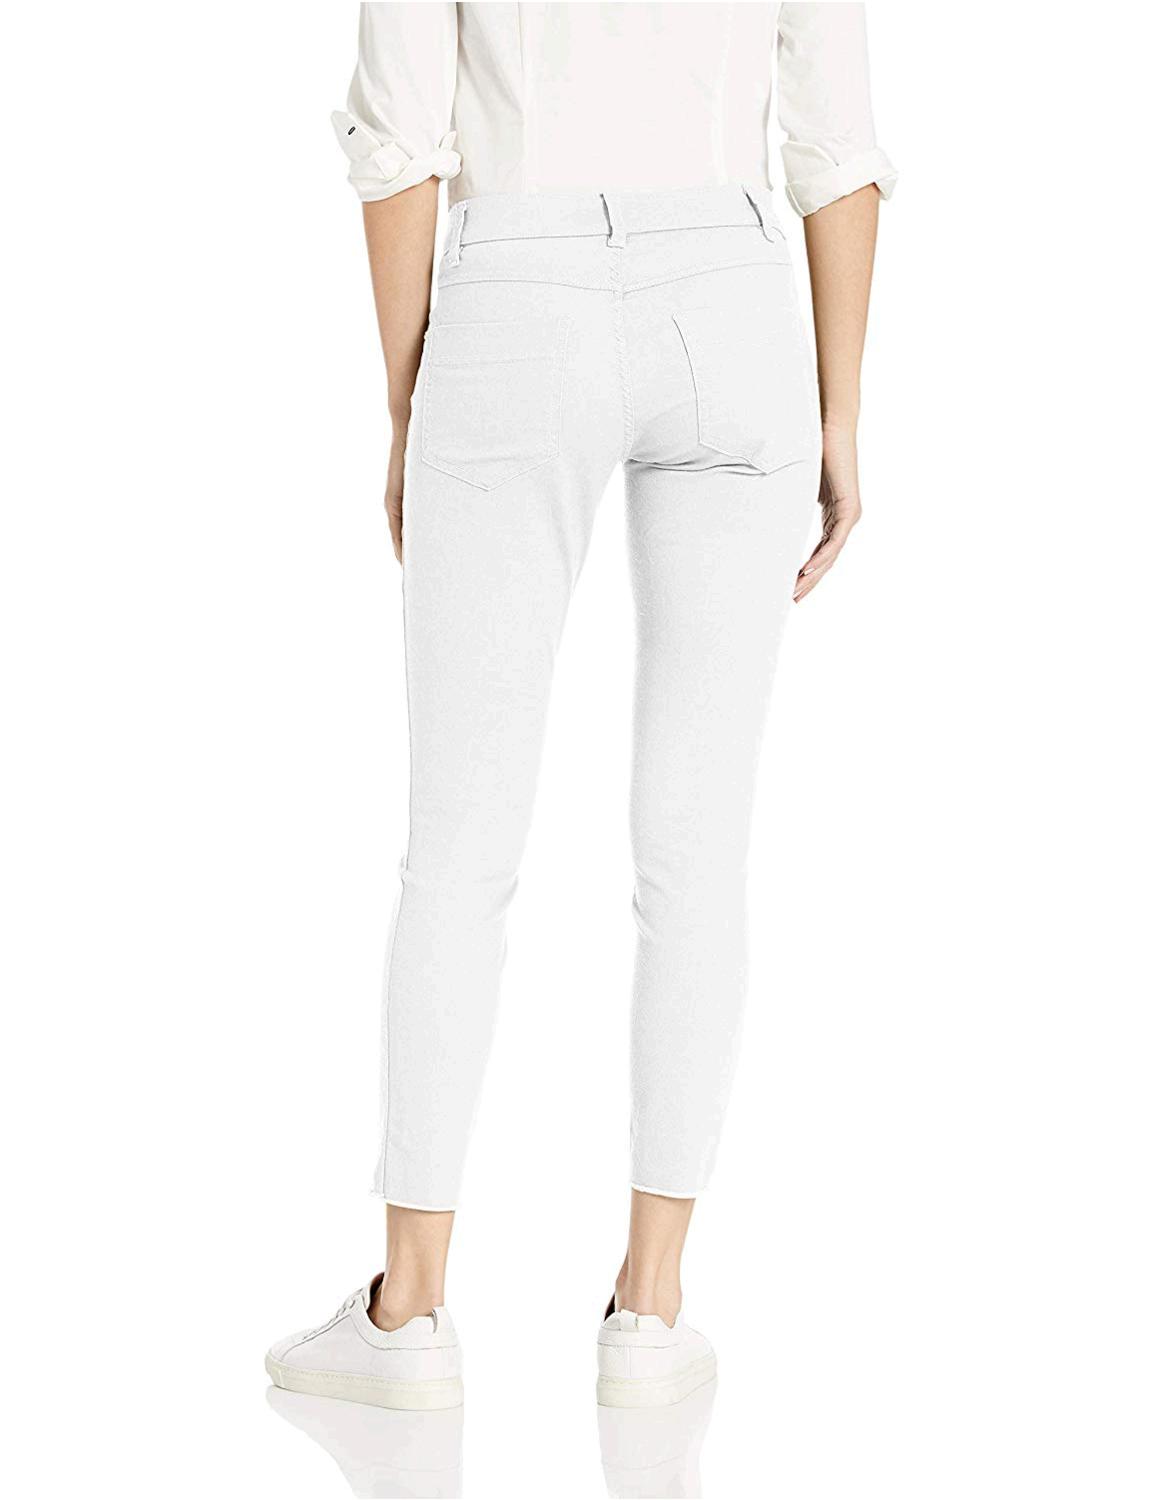 HUE Women's Ultra Soft Denim Jean Skimmer Leggings, Assorted,, White, Size  | eBay